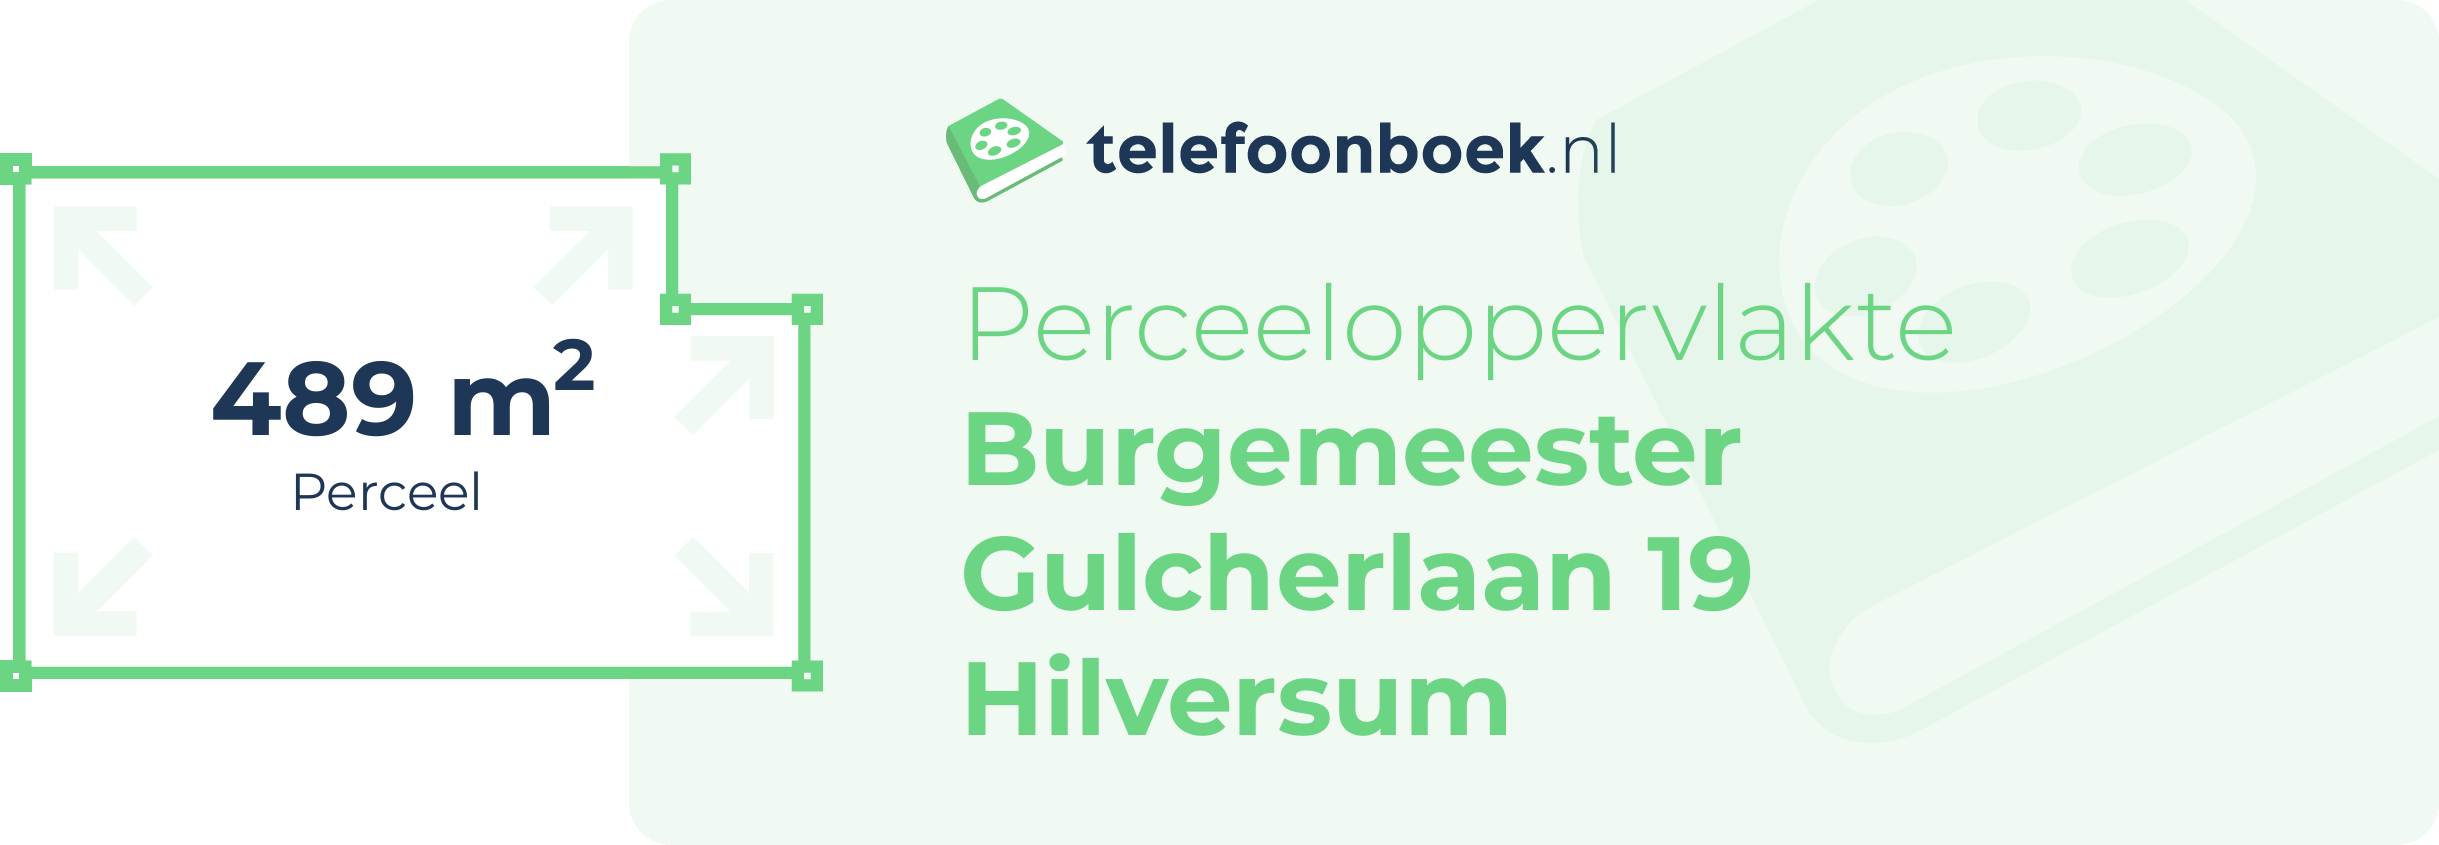 Perceeloppervlakte Burgemeester Gulcherlaan 19 Hilversum